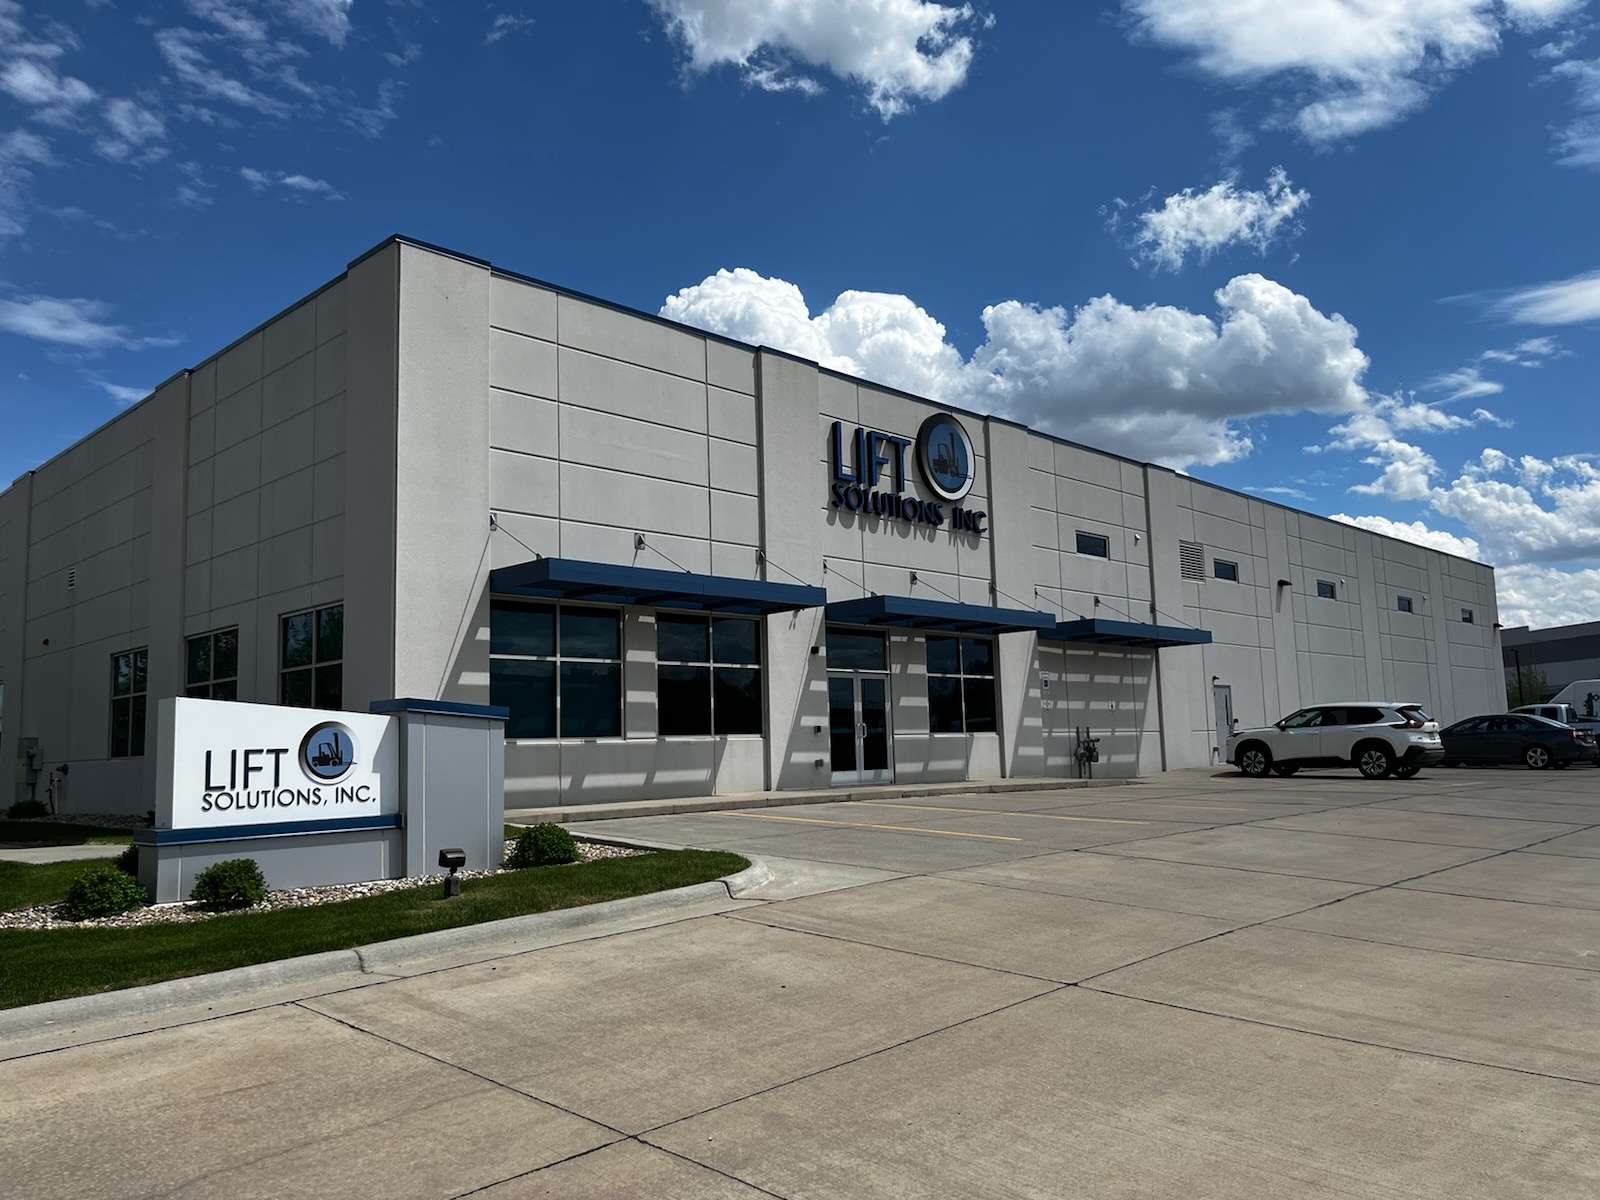 Lift Solutions, Inc. Sioux Falls (605)271-7181